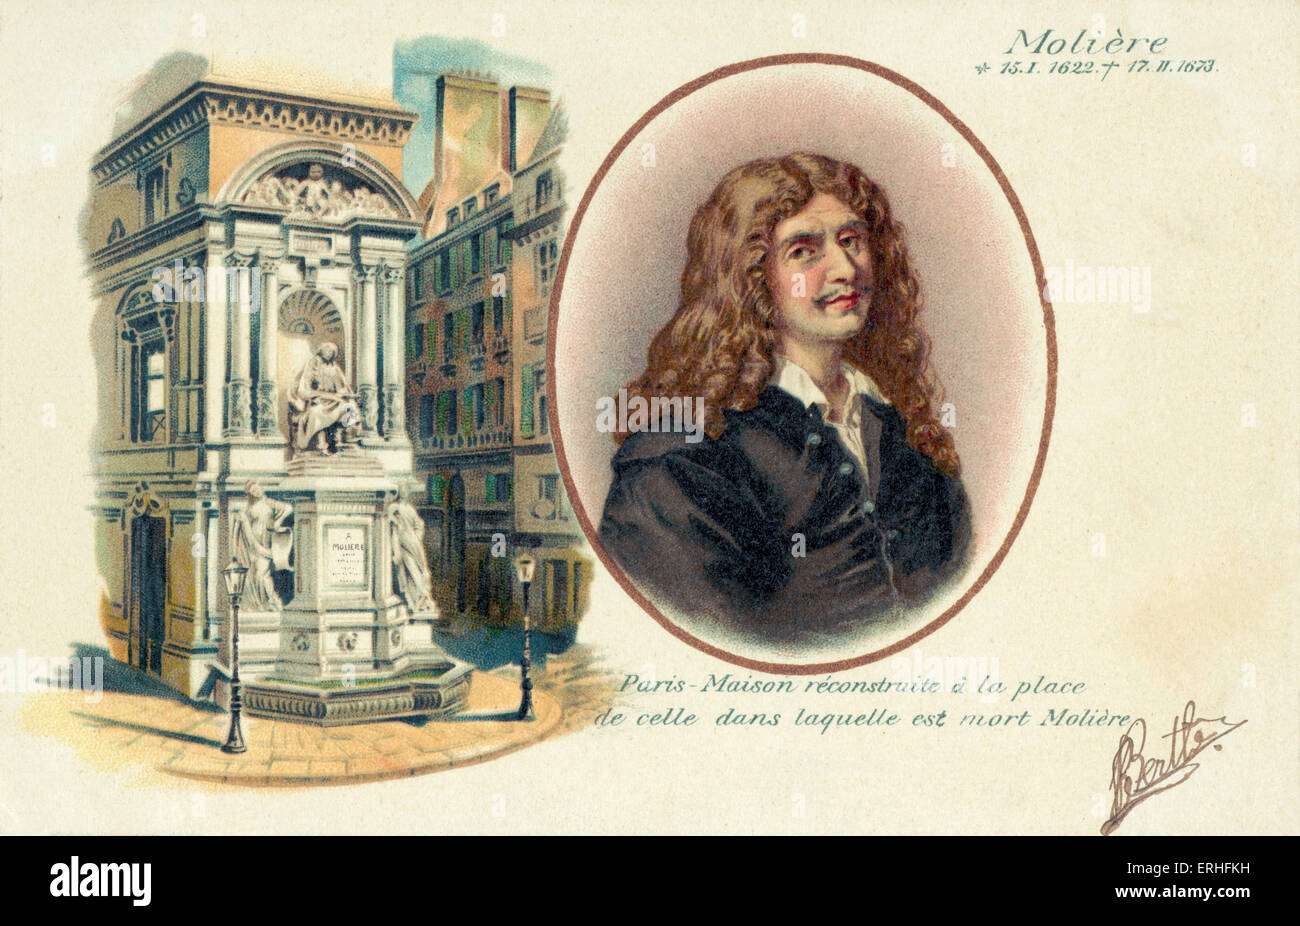 Moliere (vero nome Jan-Baptiste Poquelin) - Ritratto con illustrazione del monumento a lui dedicato - drammaturgo francese, fumetti Foto Stock